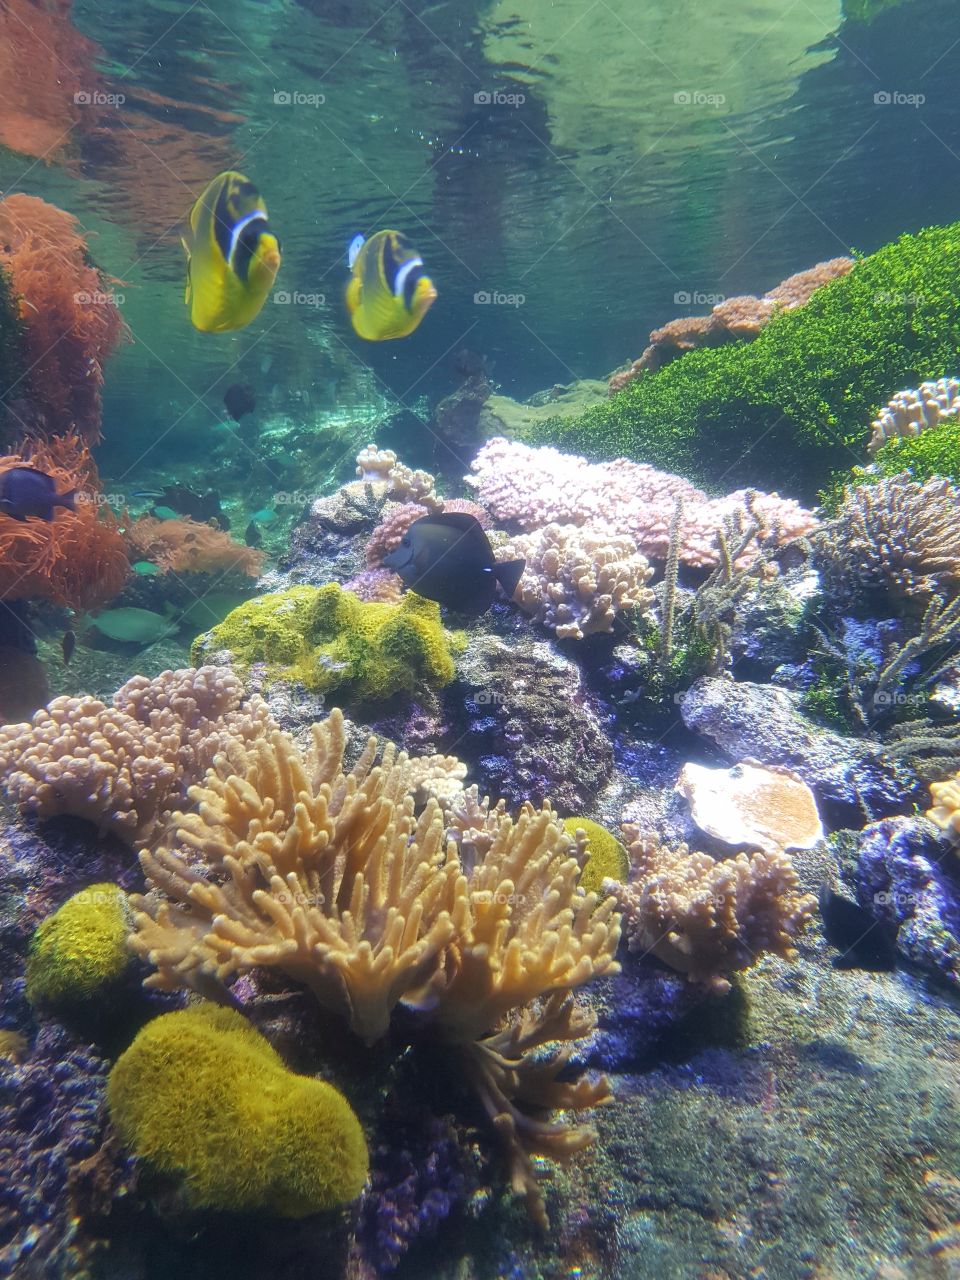 Multicolored fishes, corals and anemones in aquarium